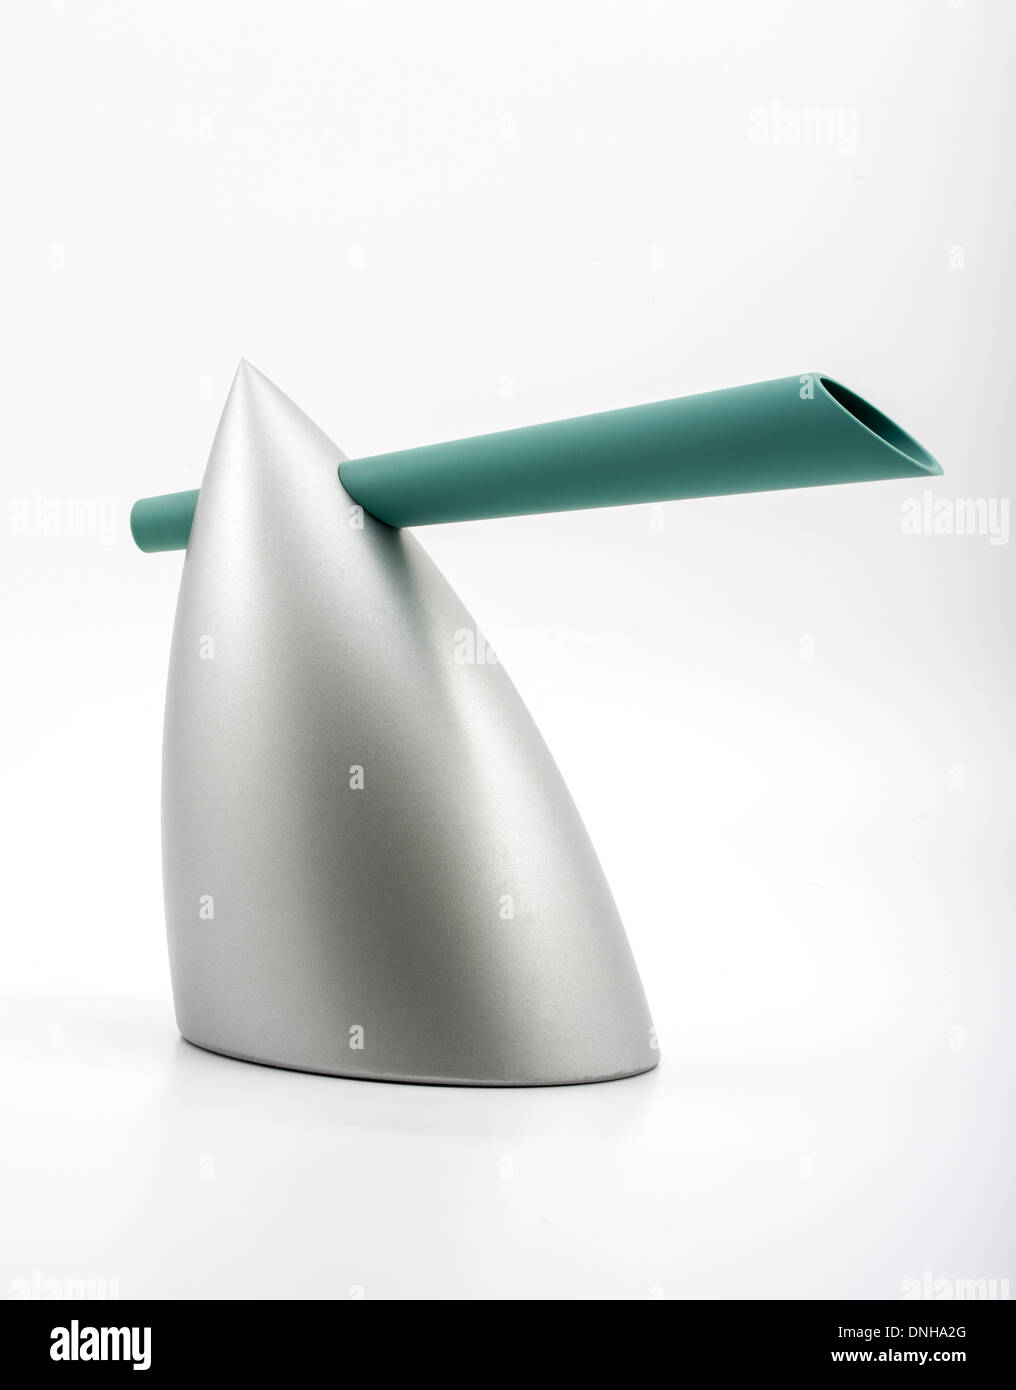 HEIßE BERTAA / Wasser Wasserkocher von Philippe Starck für Alessi entworfen. Ikonische Designs in Küche / Geräte Haushaltsgeräte. Stockfoto